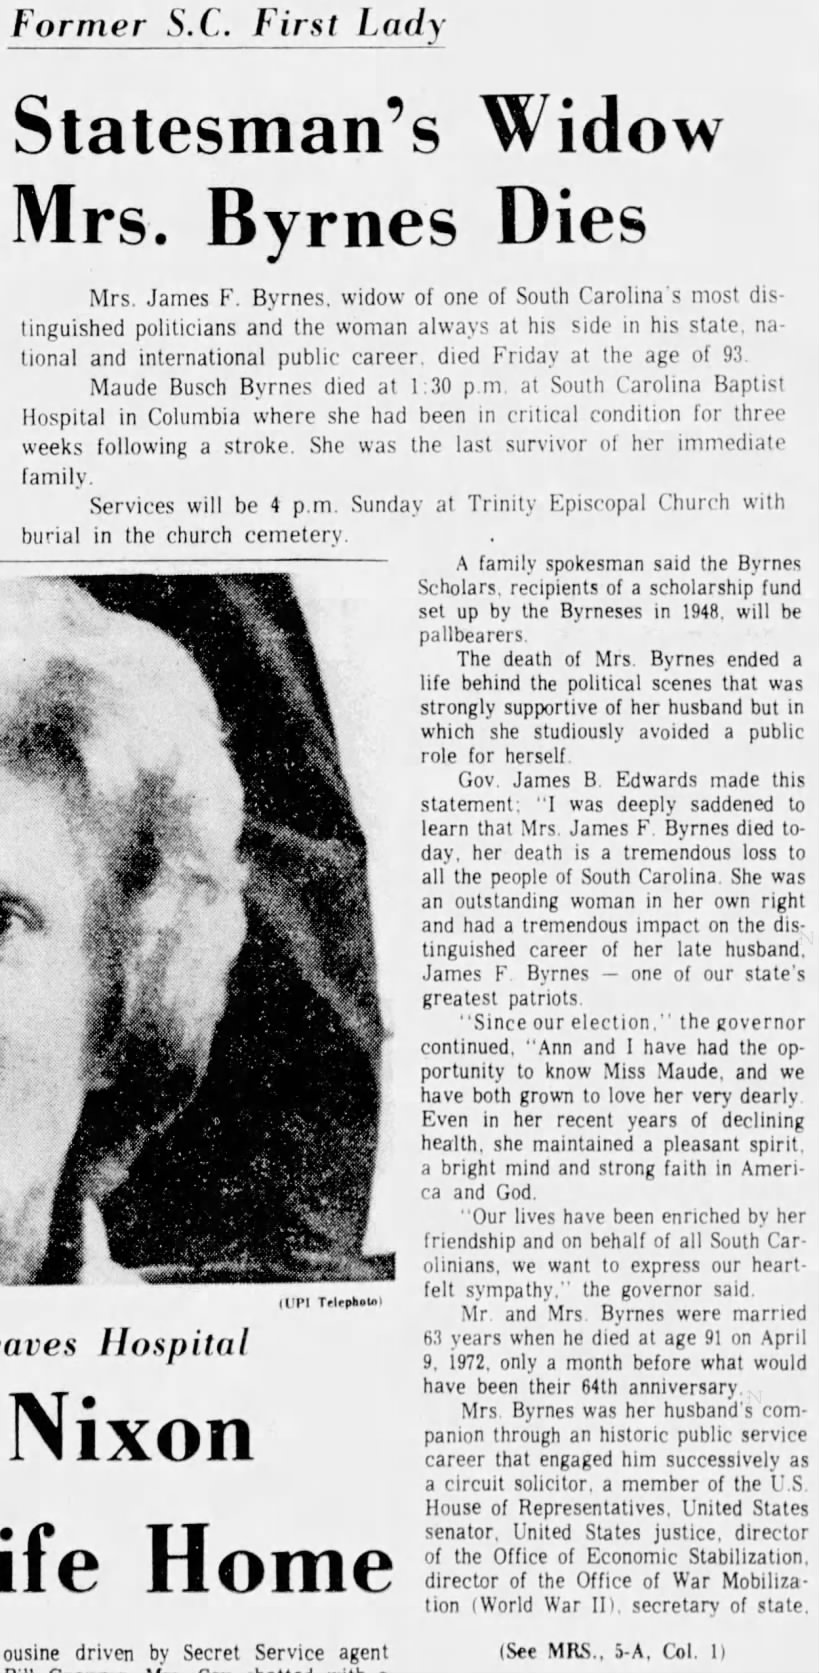 Statesman's Widow Mrs. Byrnes Dies (part 1)